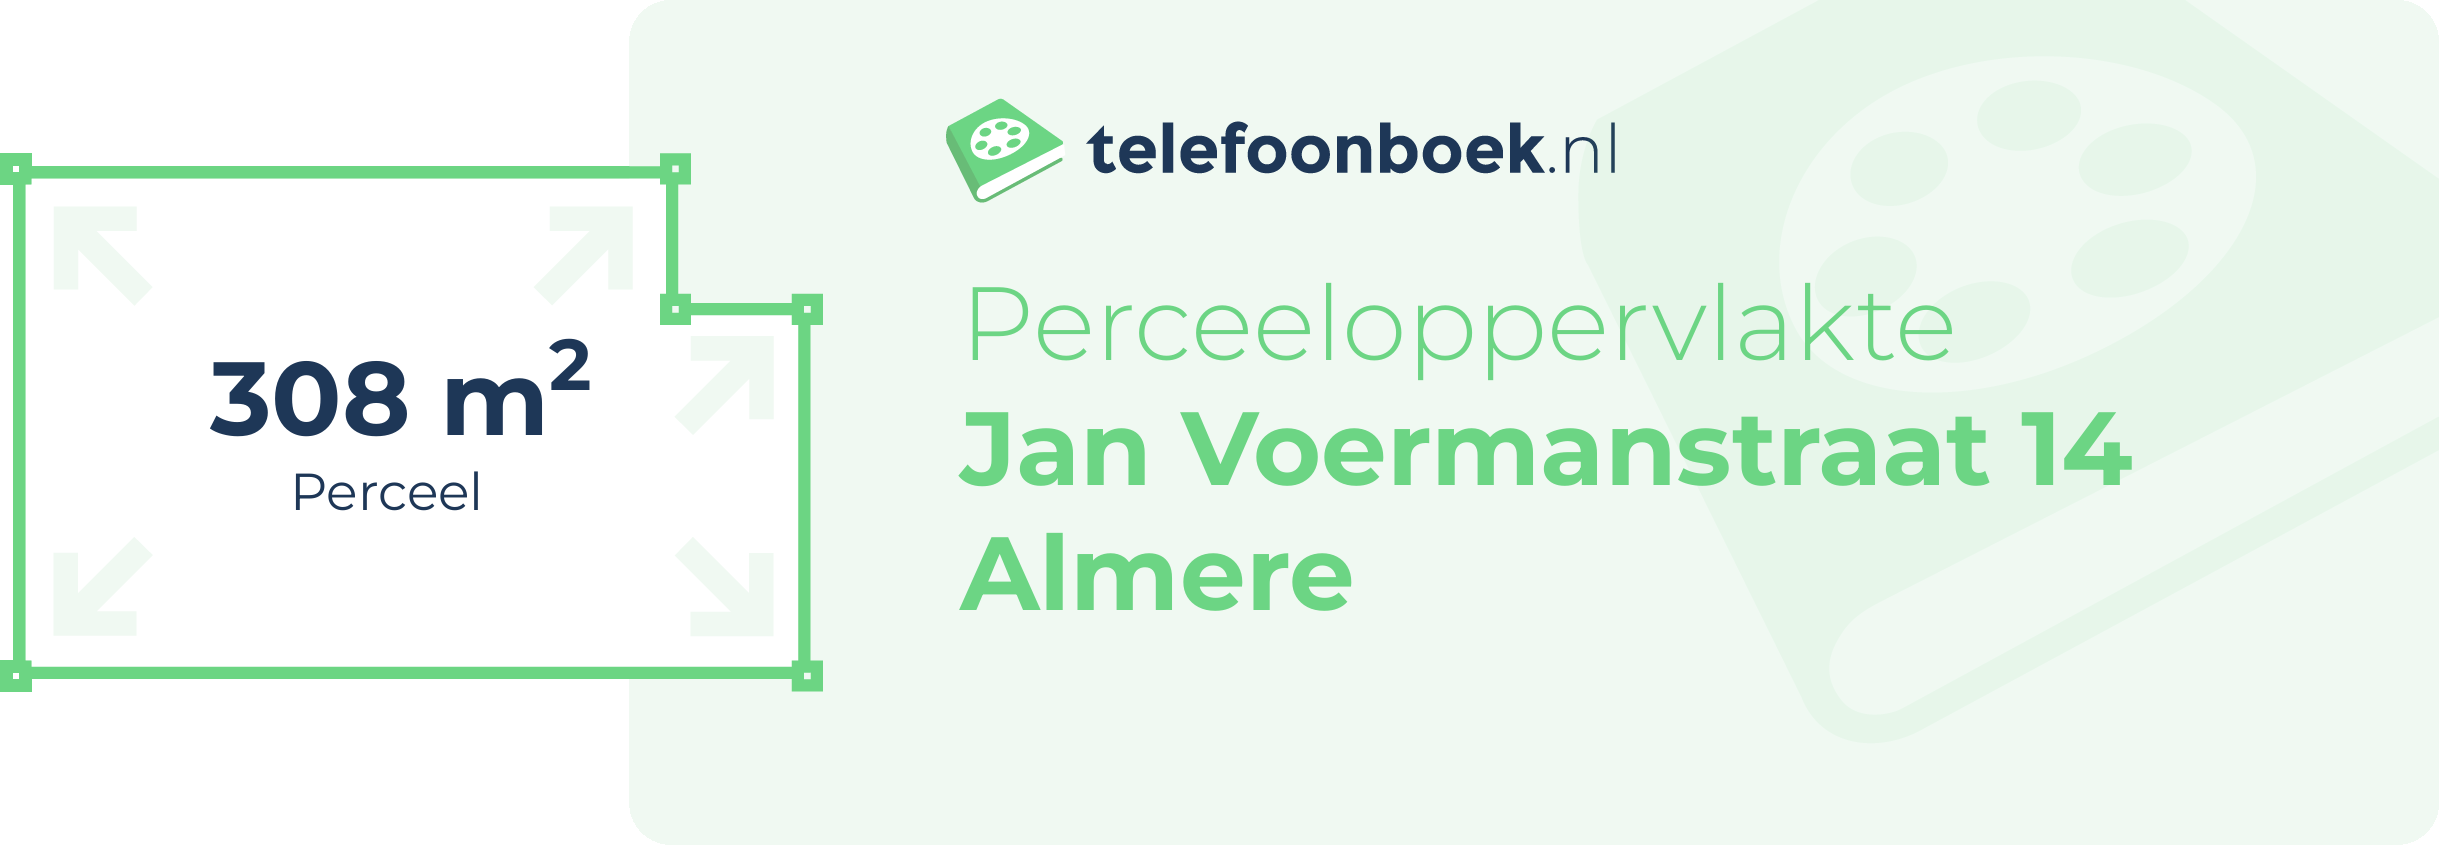 Perceeloppervlakte Jan Voermanstraat 14 Almere